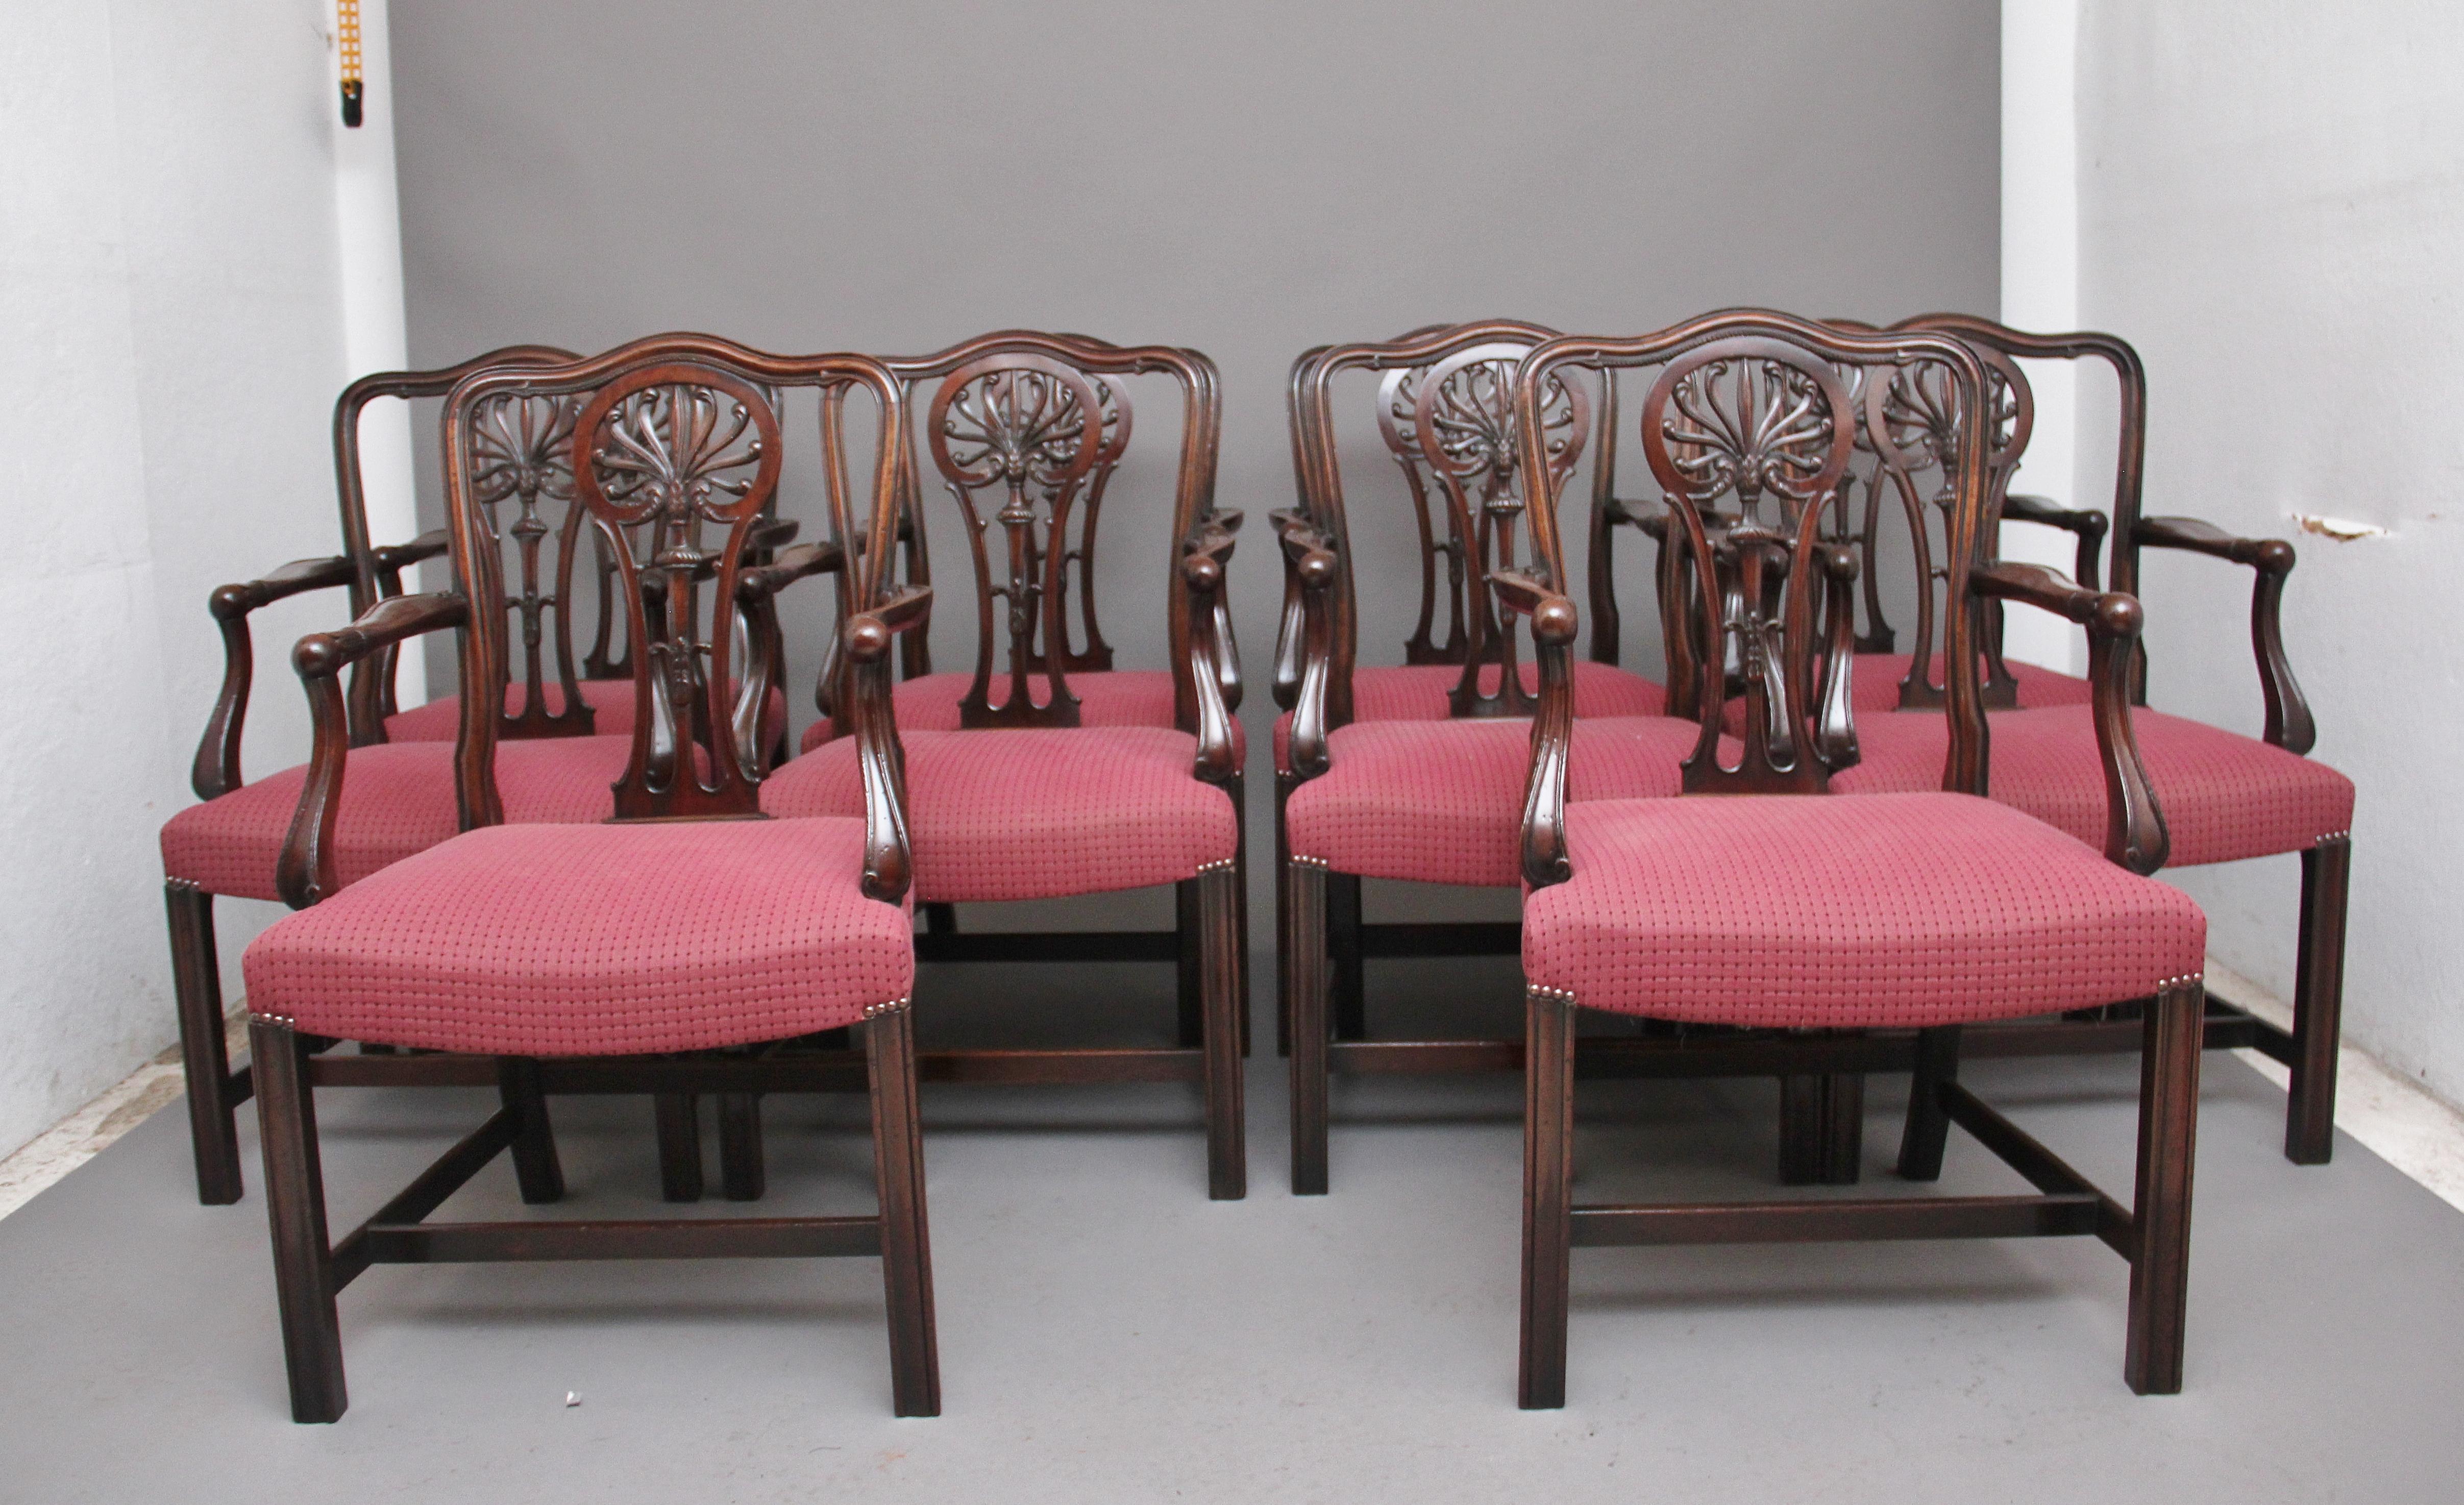 Eine Reihe von zehn frühen 20. Jahrhundert Mahagoni-Sessel von Alfred Allen Furnishings von Birmingham, mit einem dekorativen geschnitzt und durchbrochene splat in den Rücken, die schlanke geschwungene Stützen mit geschnitzten floralen Dekoration